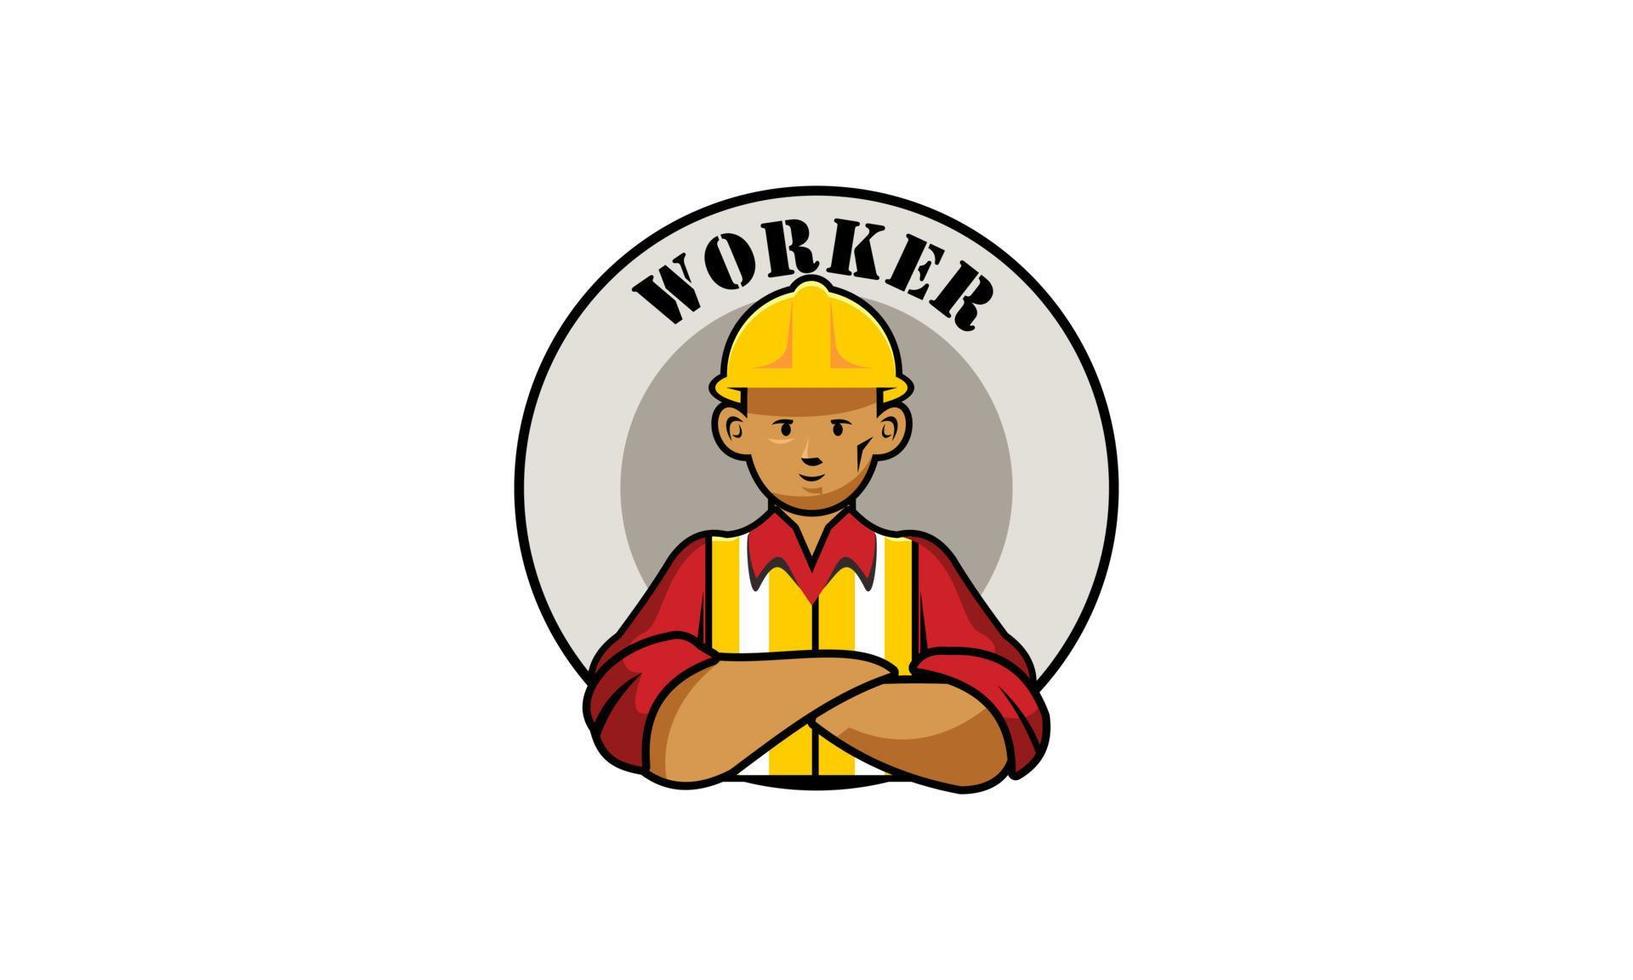 onderhoud arbeider logo vector illustratie